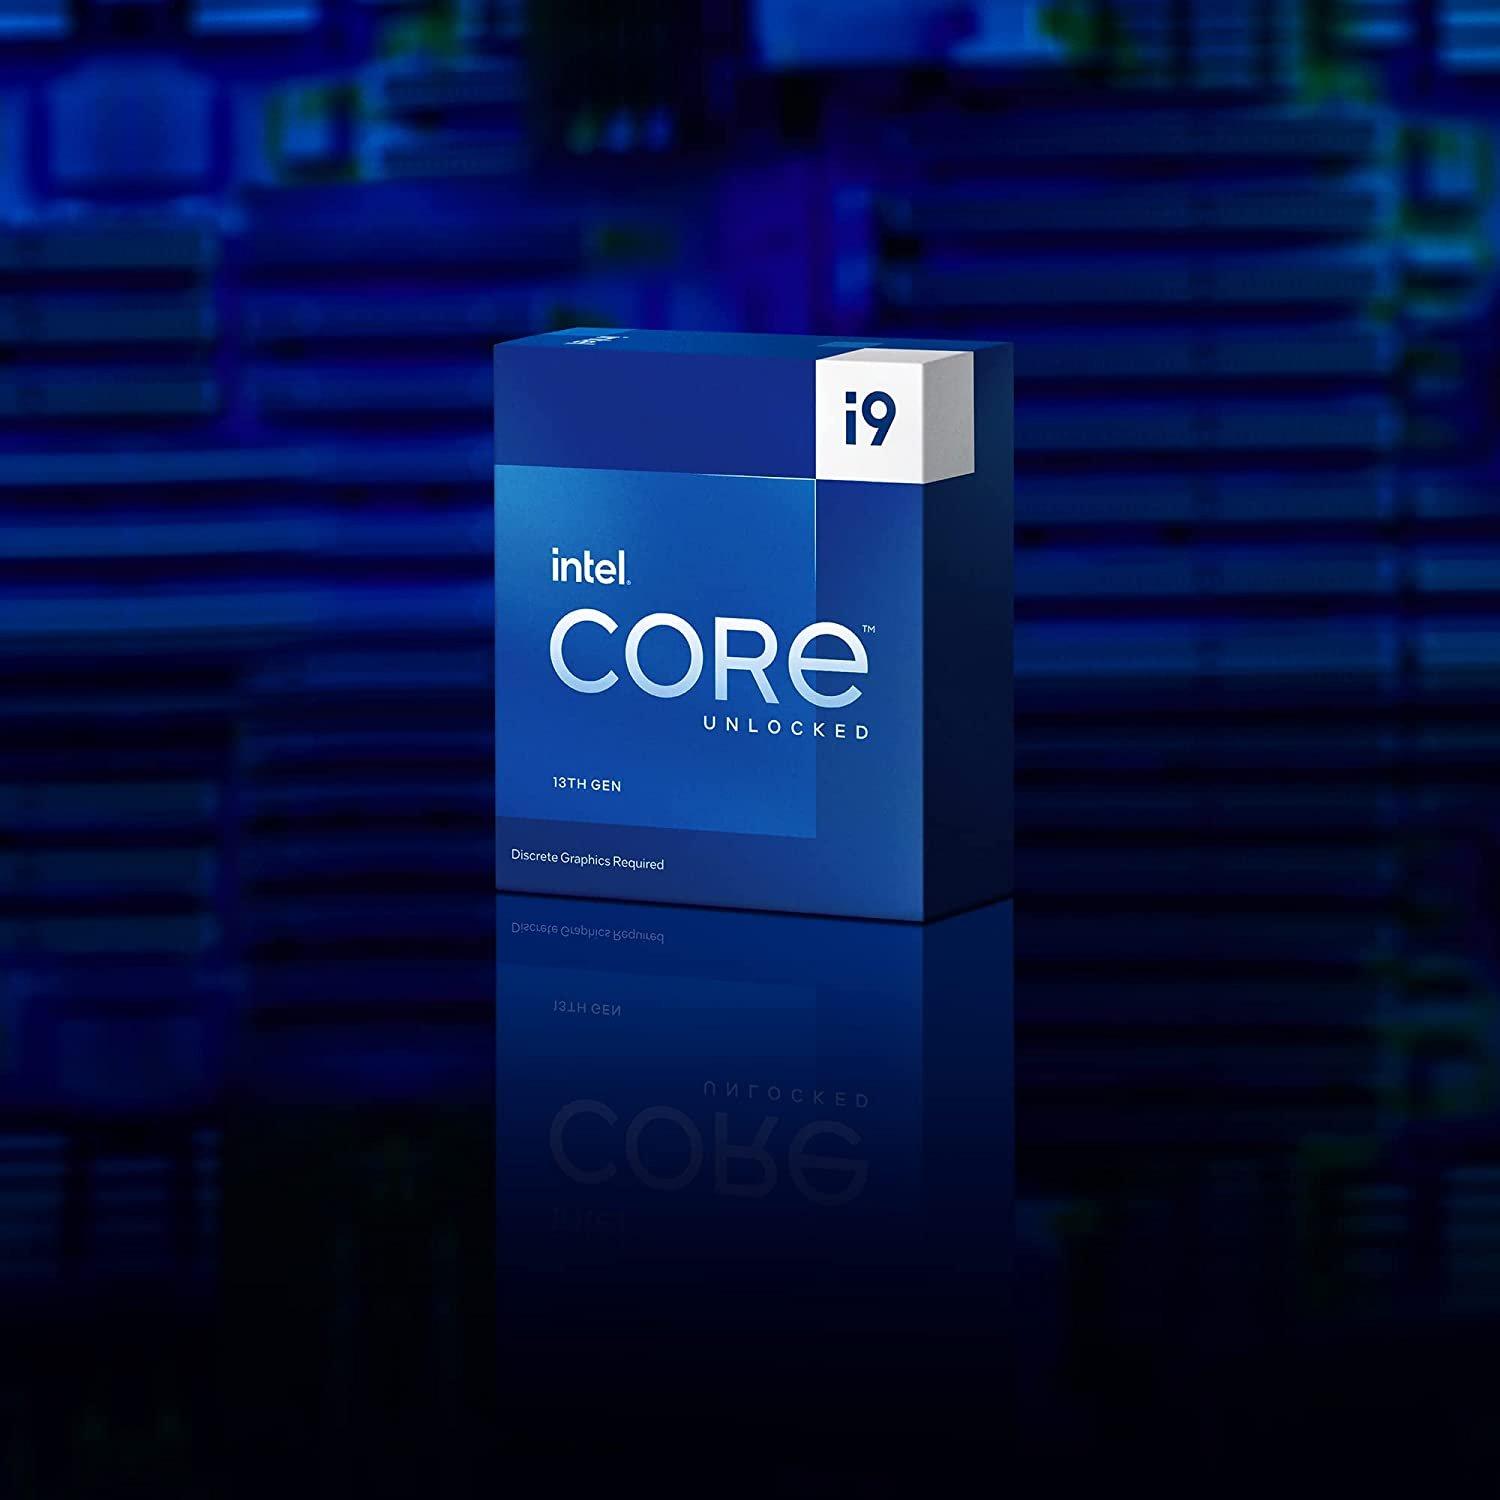 Intel Core i9-13900 2 GHz 24-Core LGA 1700 Processor